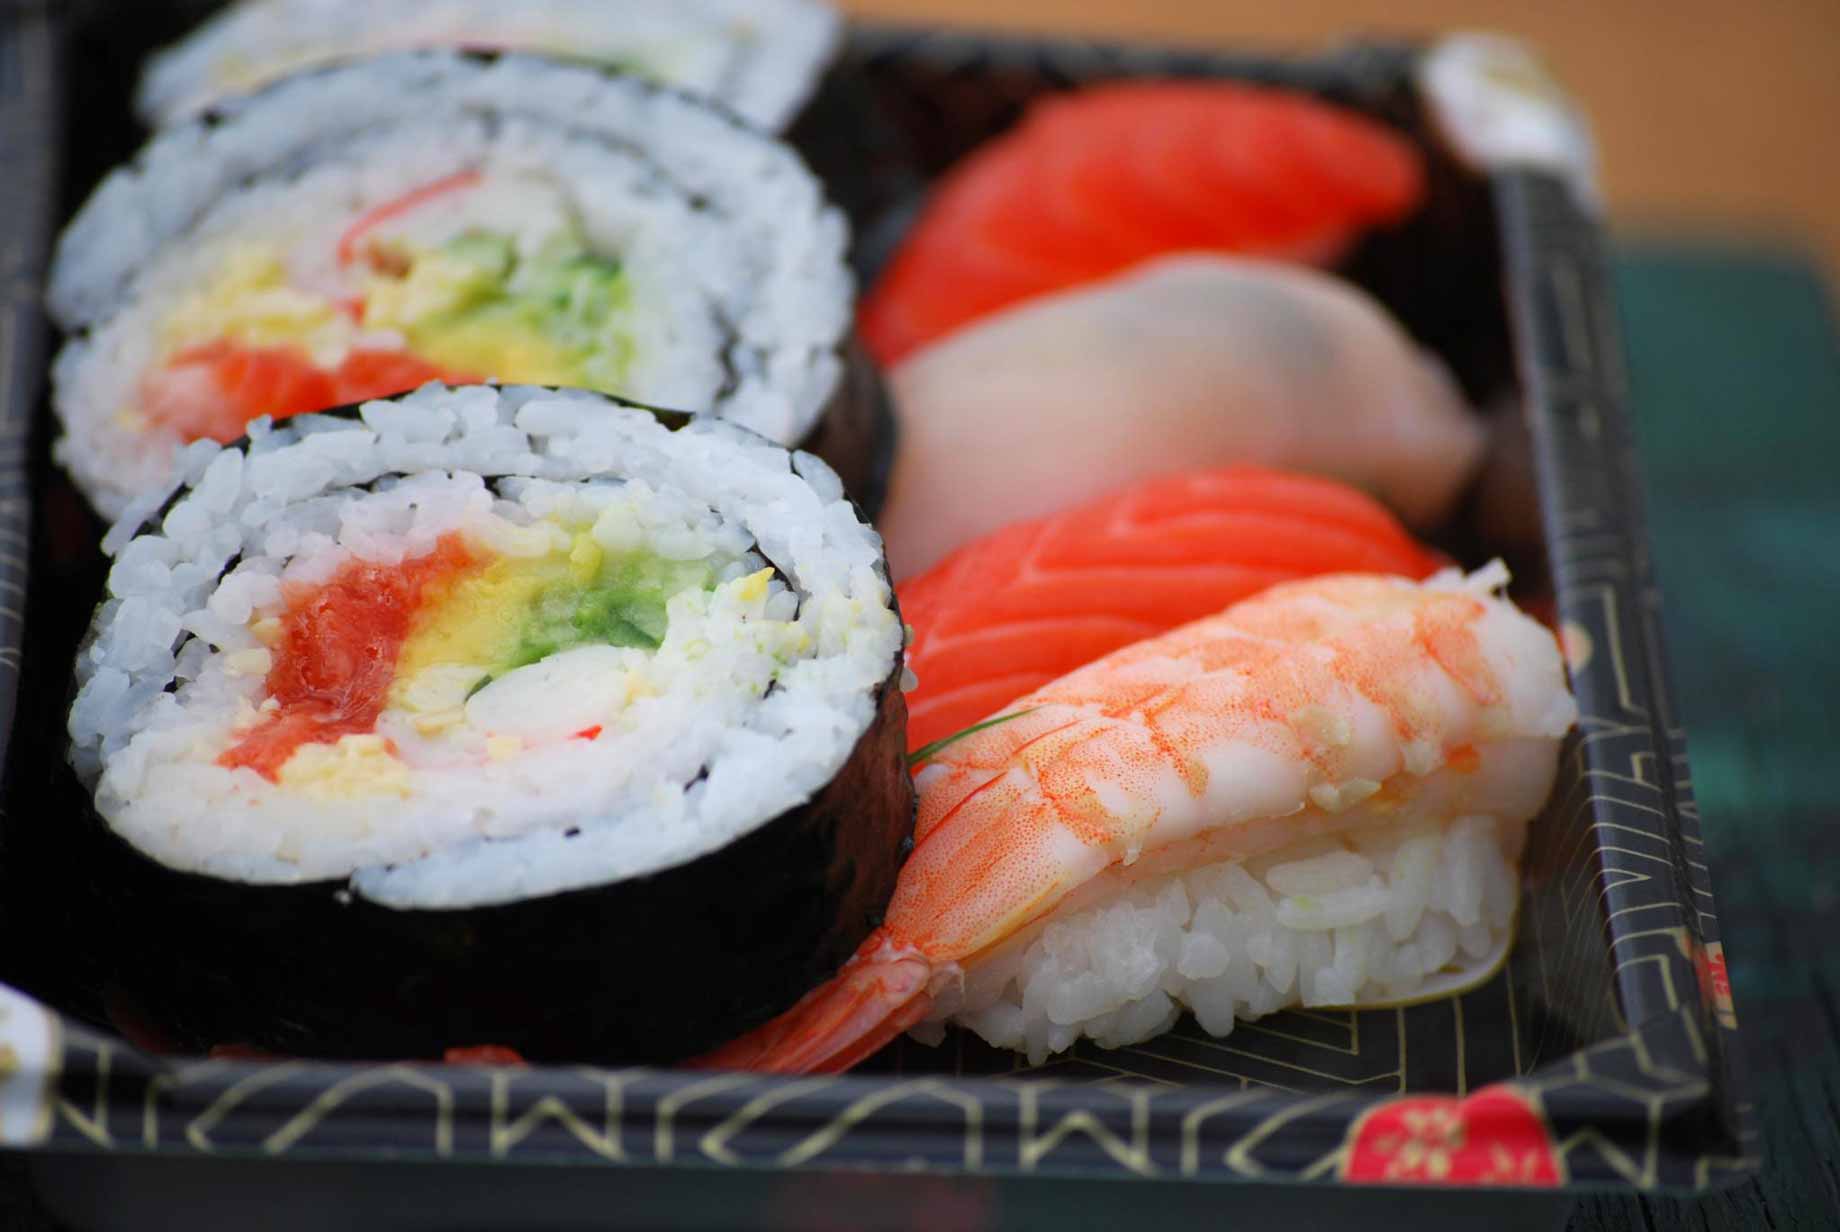 maki-sushis, poisson cru, légumes et riz vinaigré  enveloppé dans une feuille d'algue nori